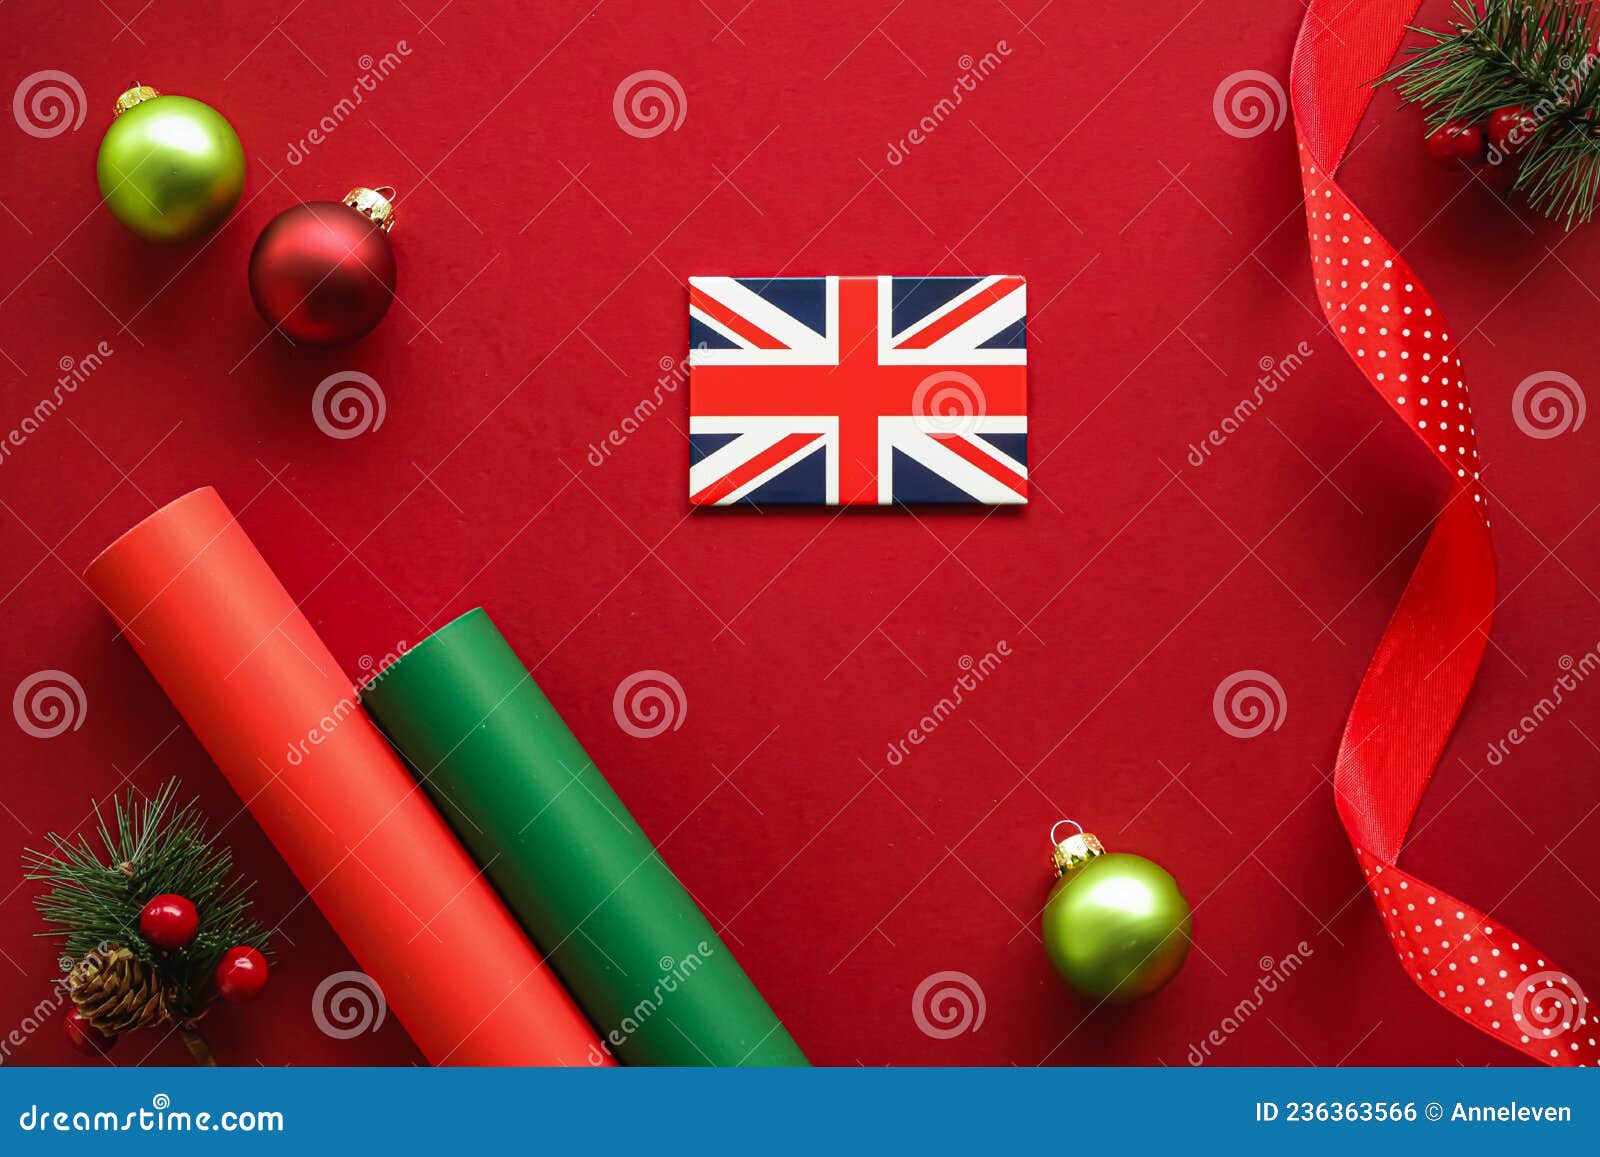 Đêm Giáng Sinh của người Anh luôn được tổ chức một cách trang trọng và gắn liền với nhiều truyền thống độc đáo. Hình ảnh này sẽ khiến bạn say mê và thích thú với những câu chuyện về lễ hội Giáng Sinh đậm chất Anh quốc.